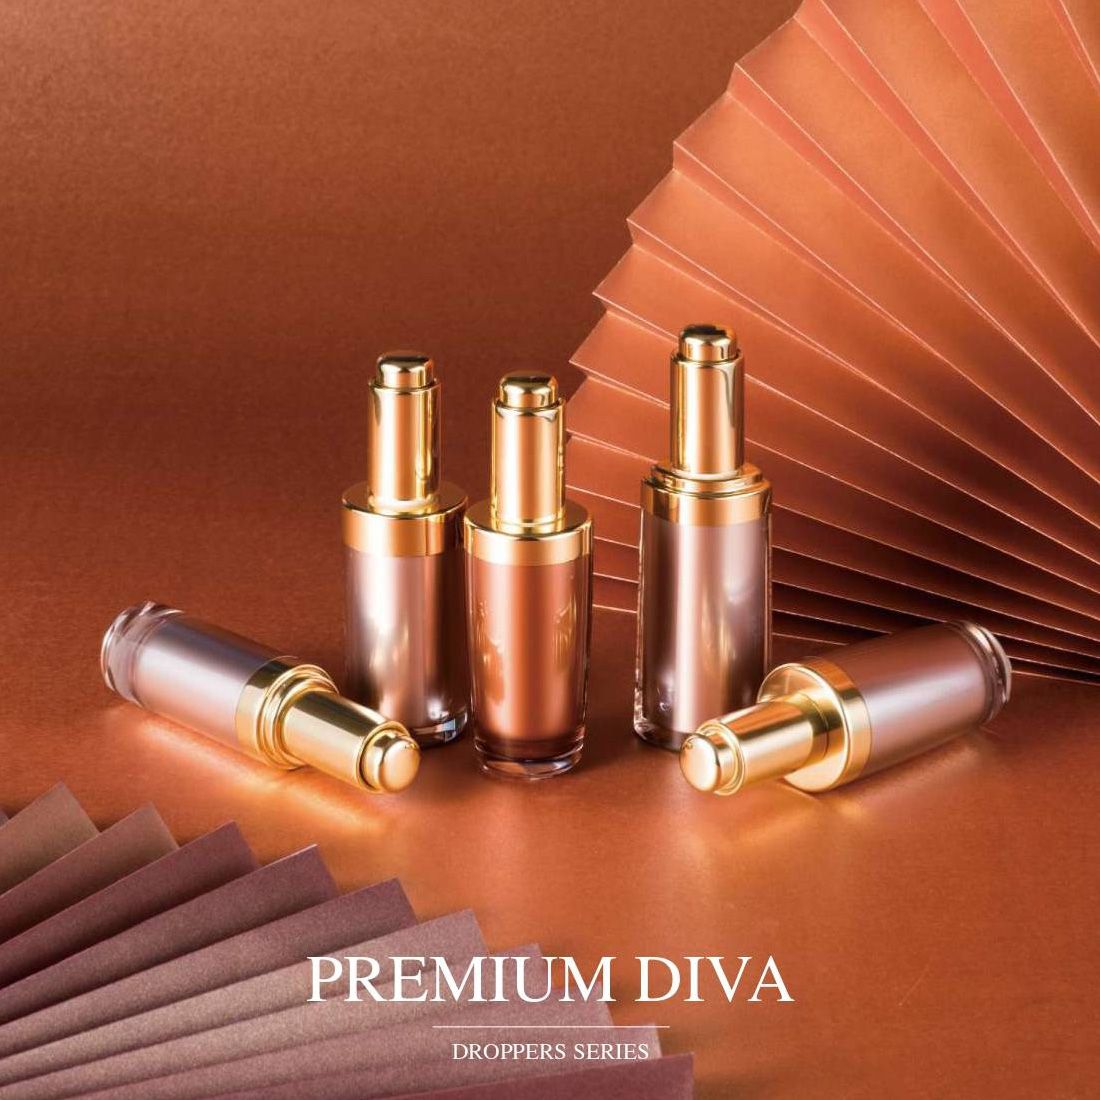 Premium Diva(럭셔리 아크릴 화장품 드로퍼 화장품 및 스킨케어 포장) - 드로퍼 시리즈